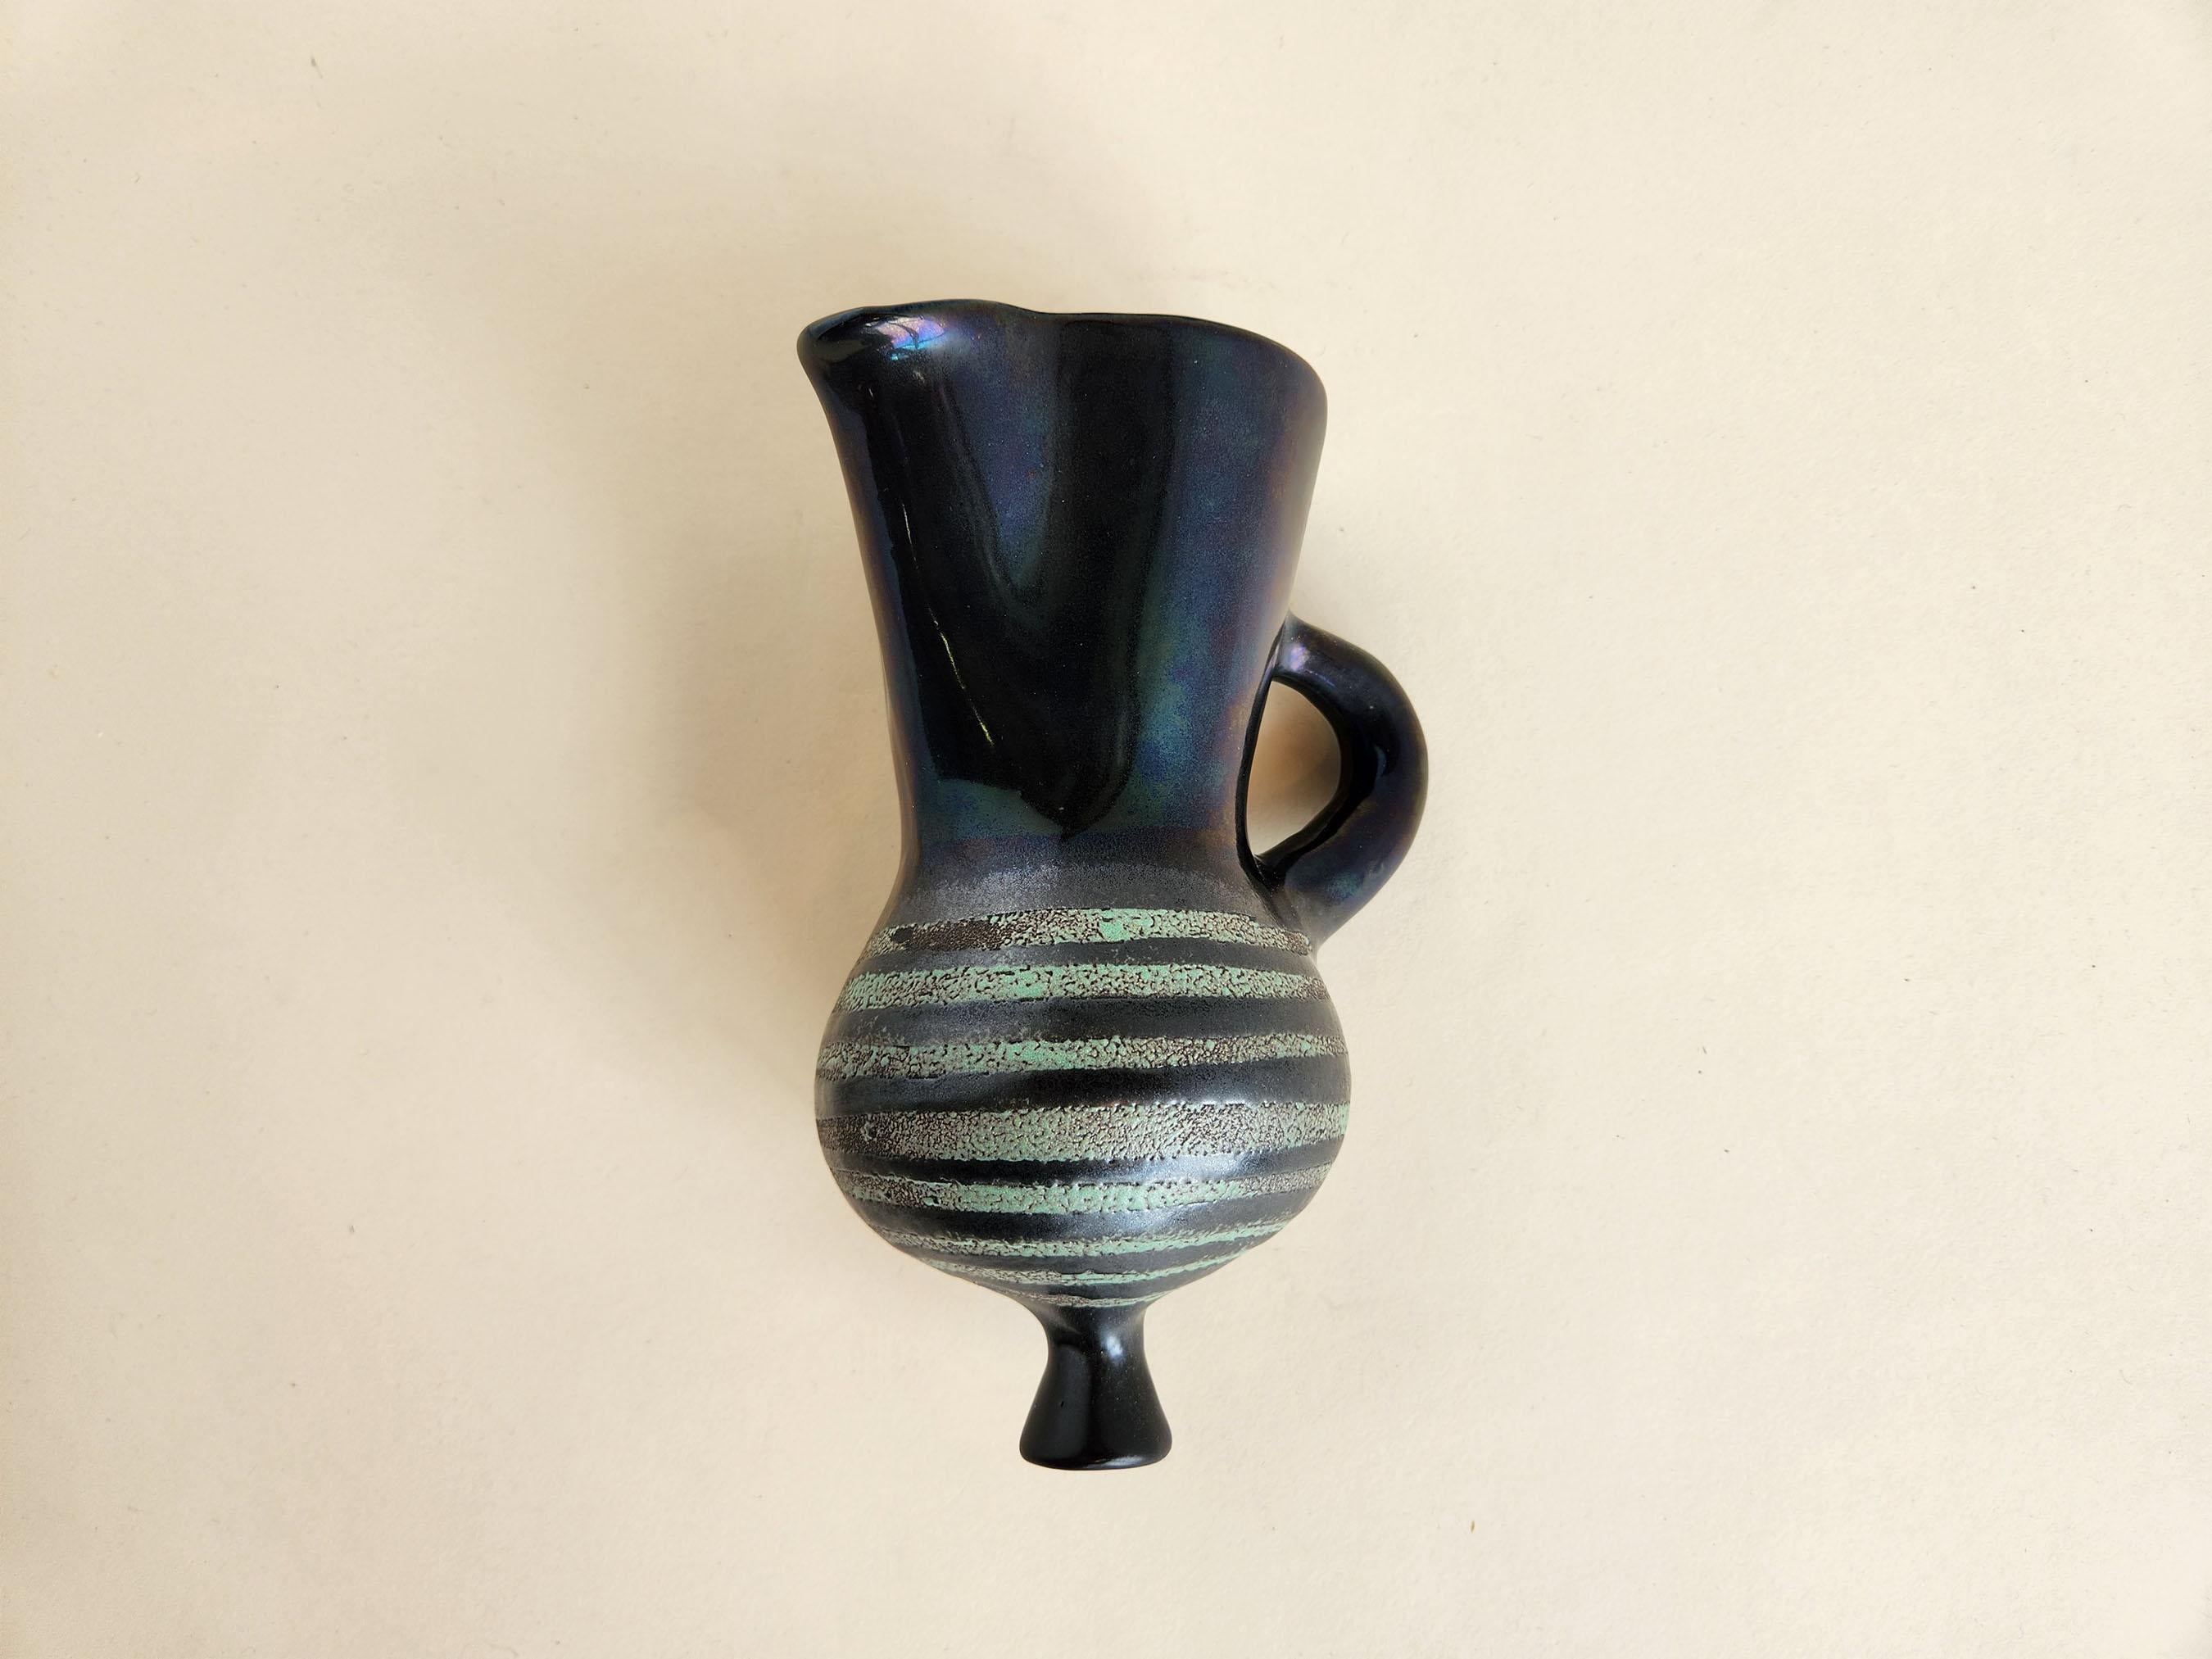 Vintage Keramik Vase für die Wand  von Roger Capron - Vallauris, Frankreich

Roger Capron war ein einflussreicher französischer Keramiker, der für seine Kacheltische und die Verwendung wiederkehrender Motive wie stilisierte Zweige und geometrische